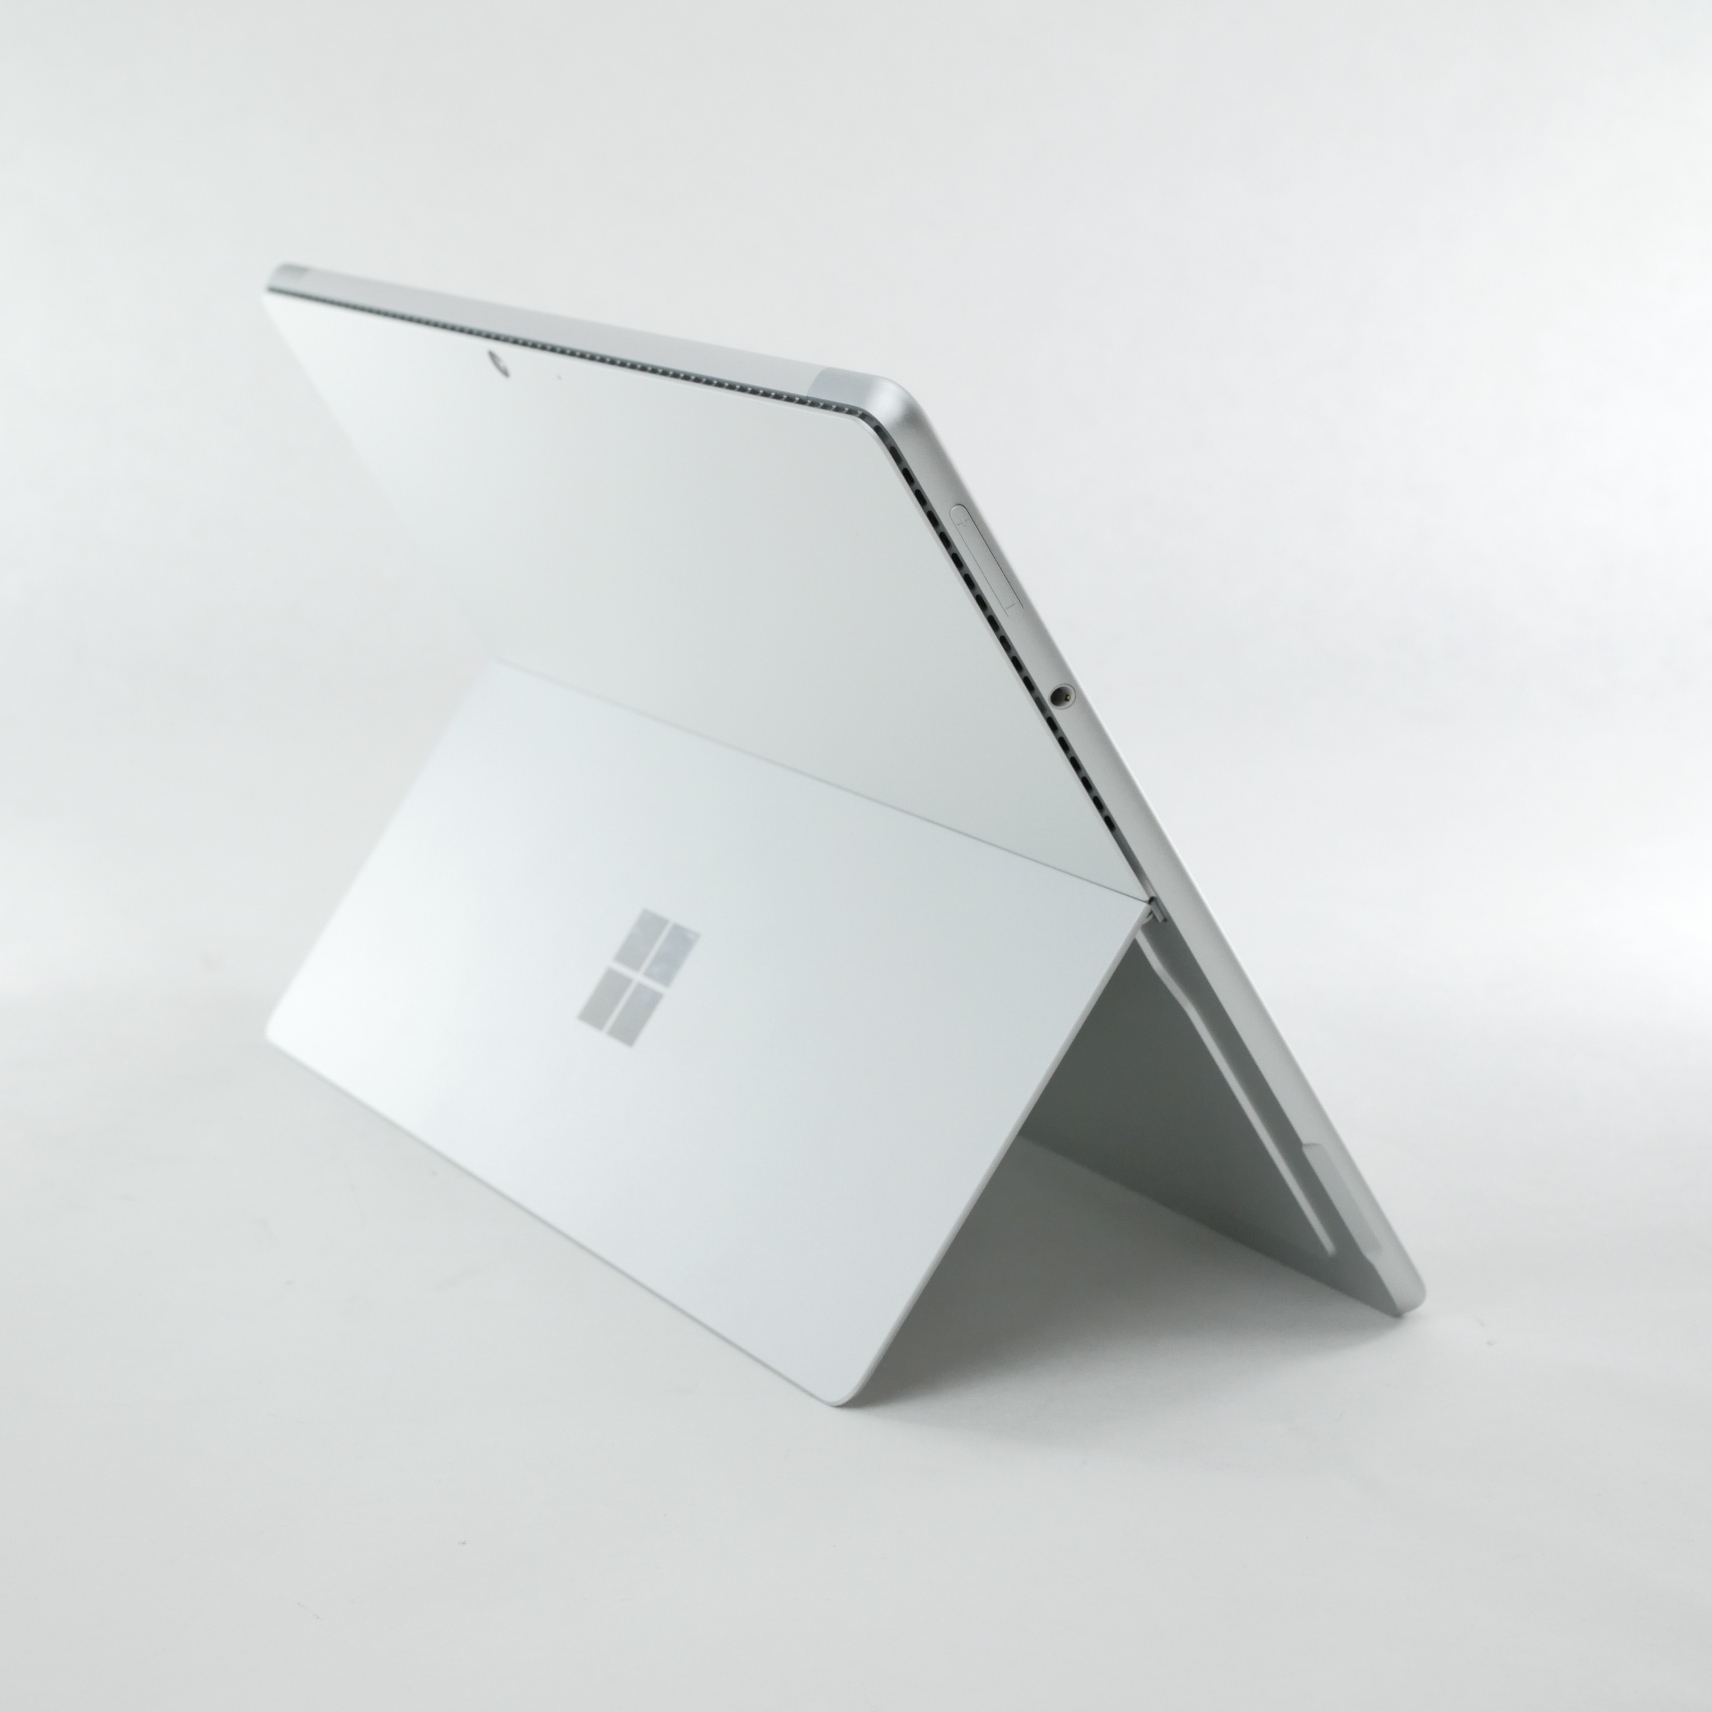 Microsoft Surface Pro 8 13" Core I7-1185G7 16Gb RAM 256Gb SSD 8PW-00032